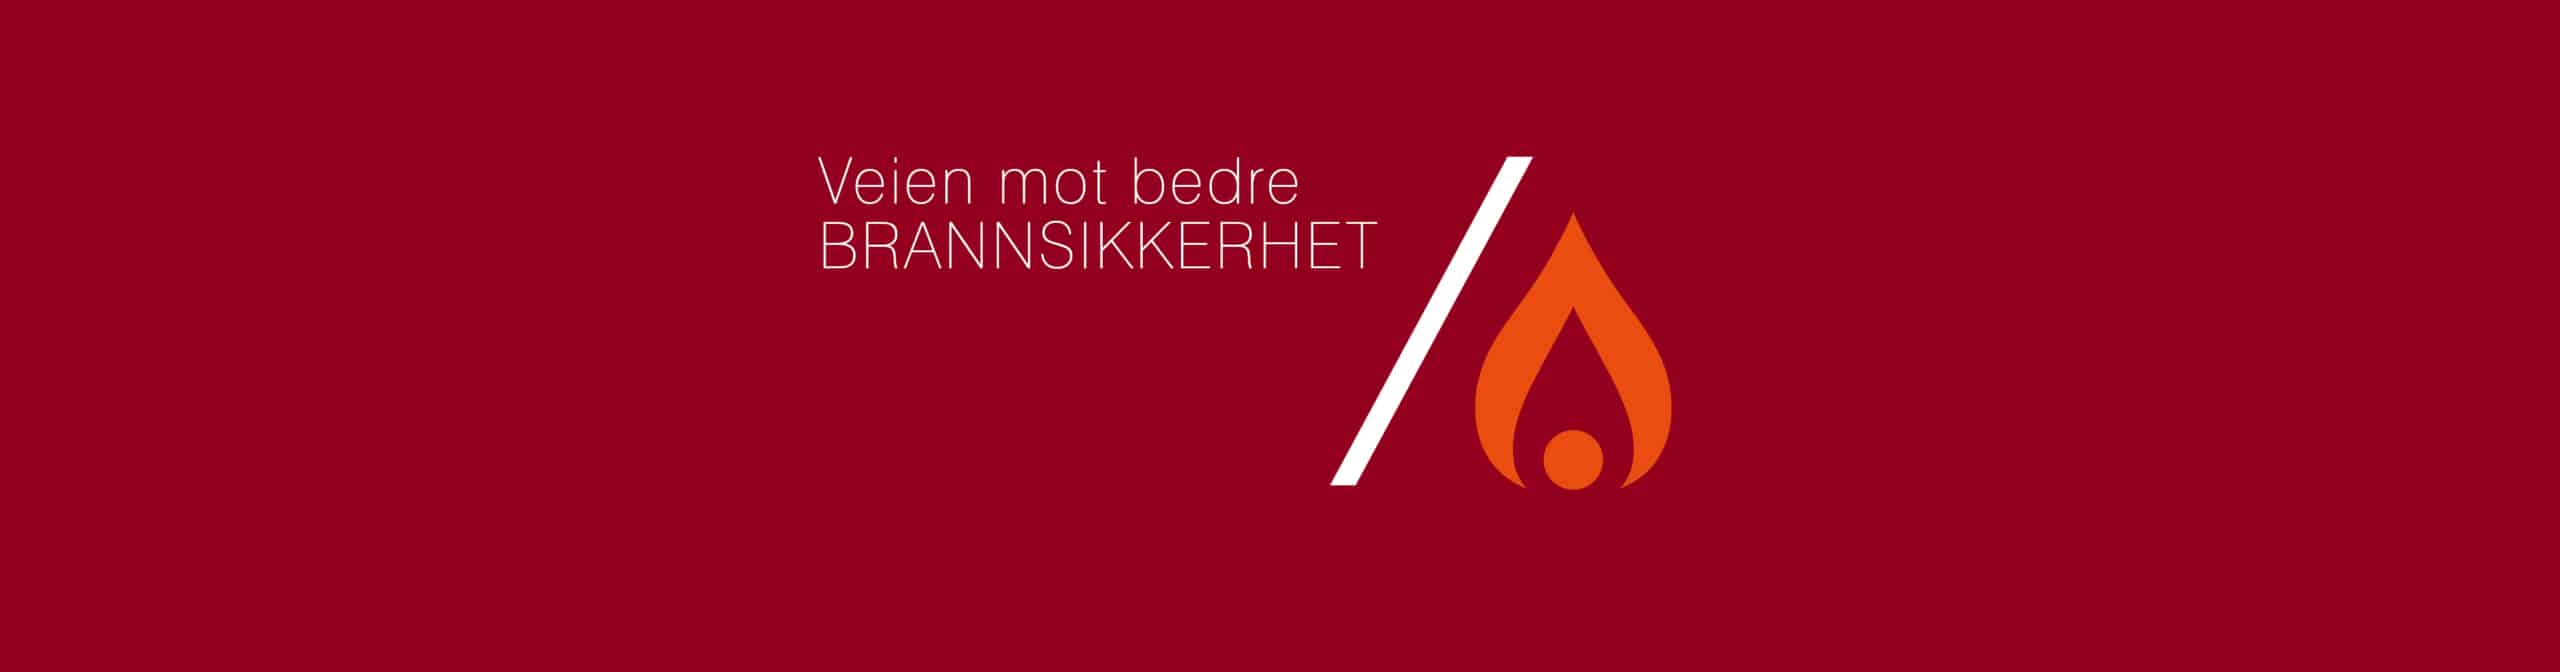 Firesafe Brannsymposium 2019, ny kunnskap, bedre brannsikkerhet